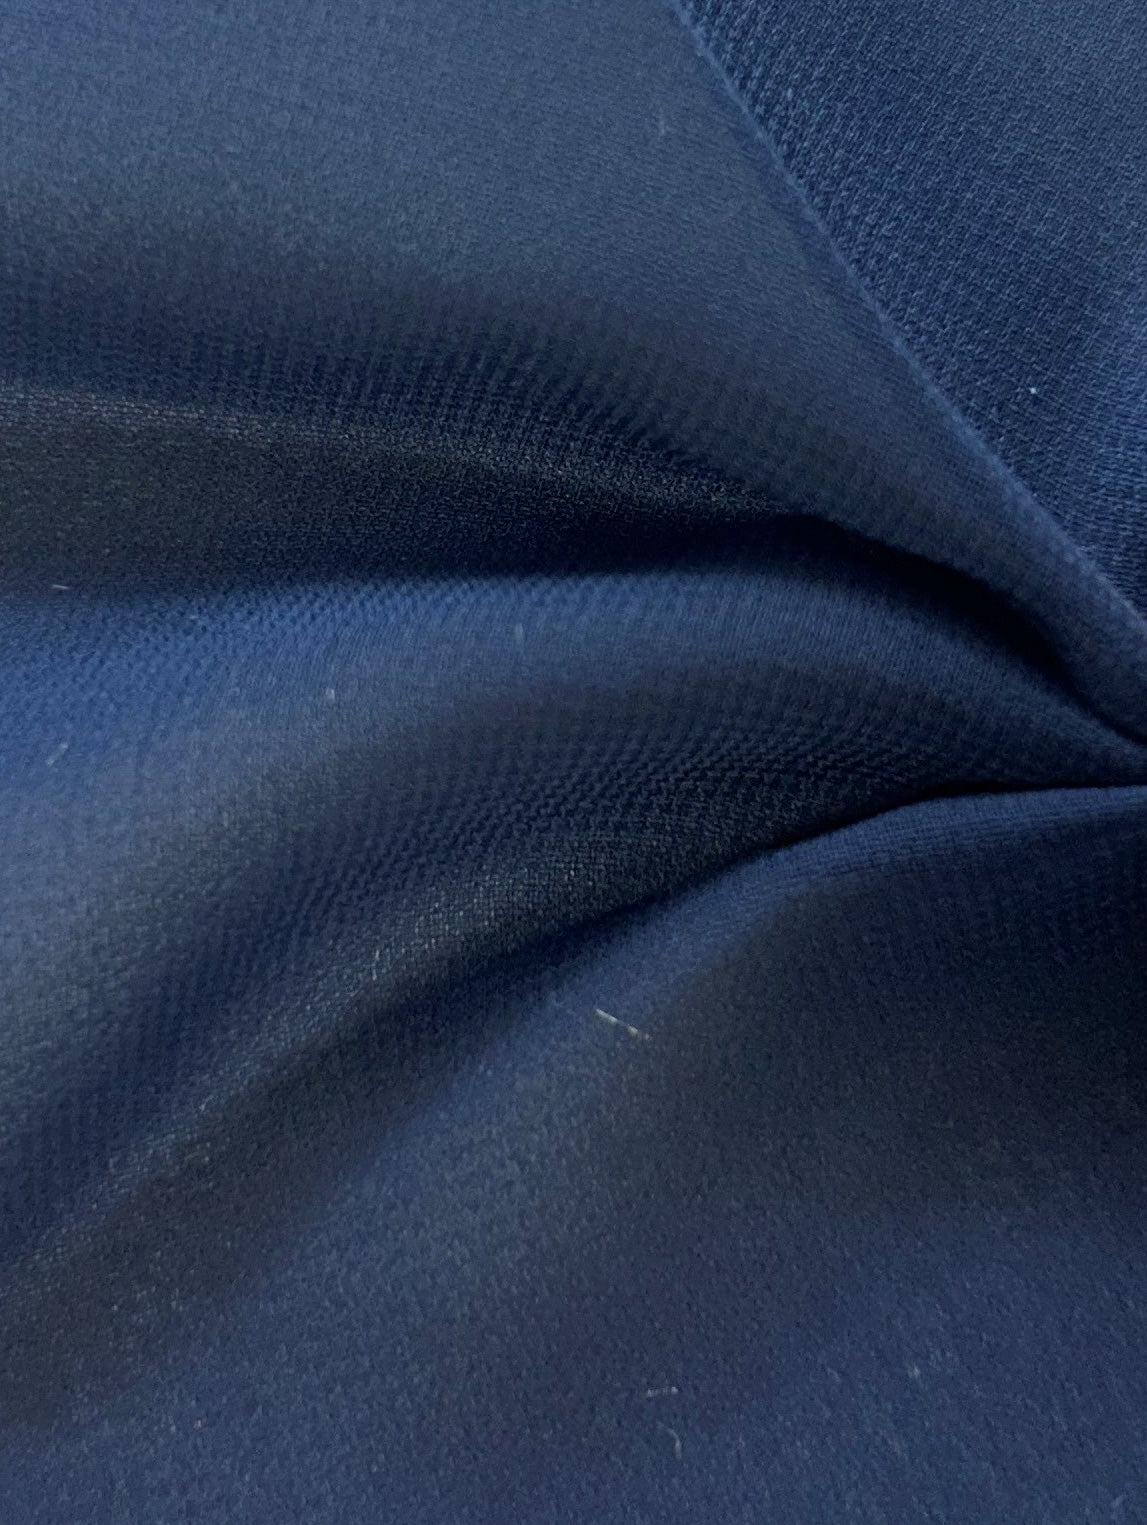 Marineblauer Polyester-Chiffon-Stoff – Serendipity